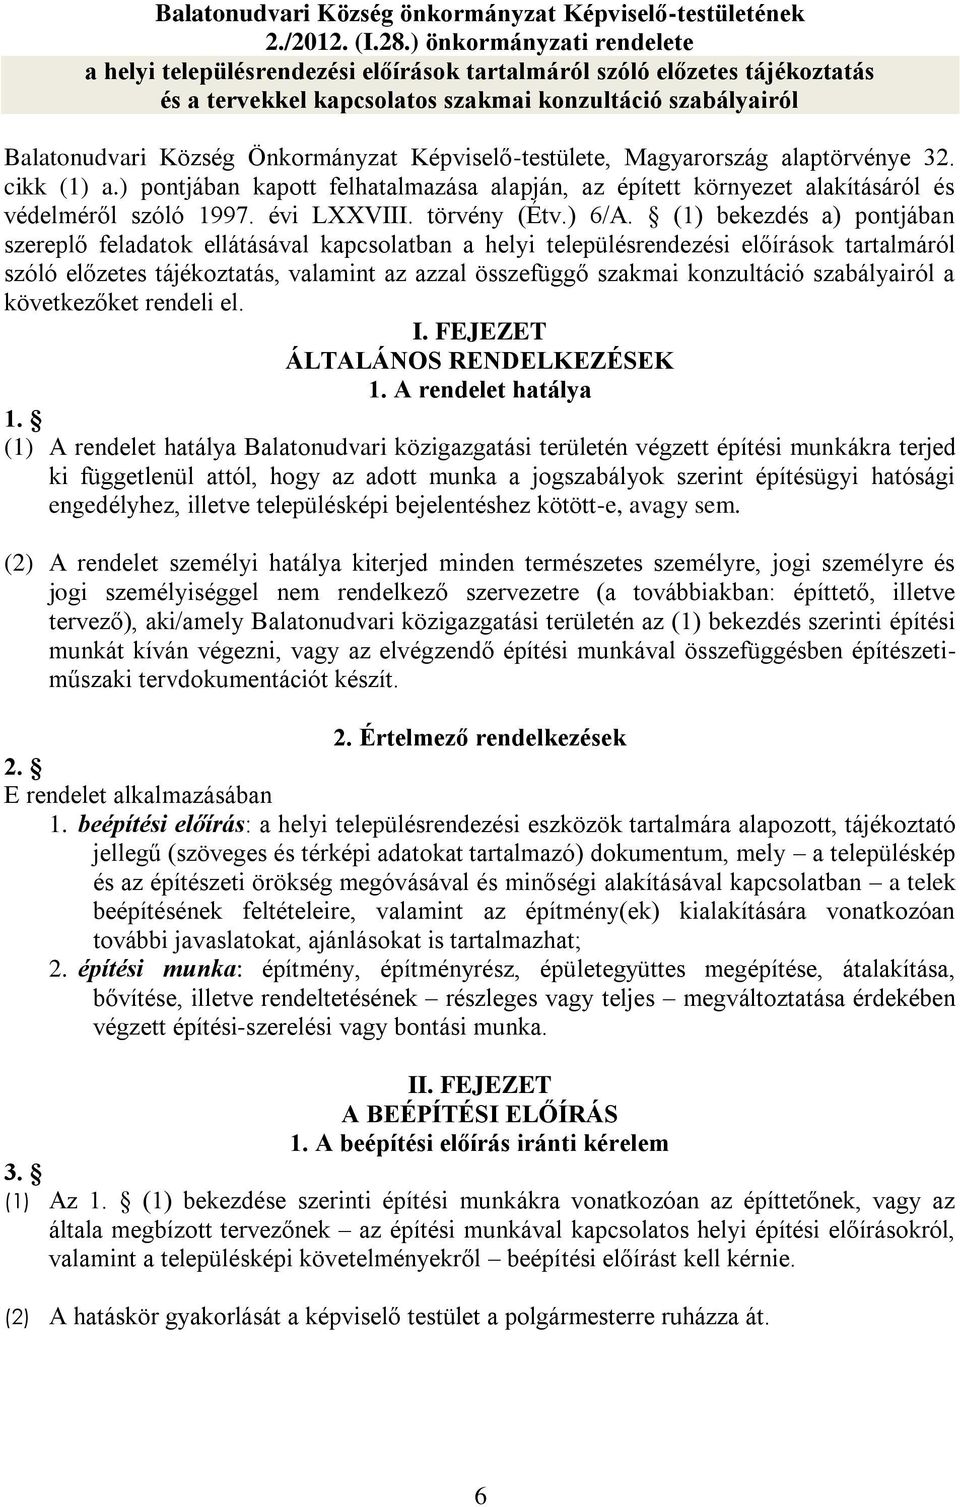 Képviselő-testülete, Magyarország alaptörvénye 32. cikk (1) a.) pontjában kapott felhatalmazása alapján, az épített környezet alakításáról és védelméről szóló 1997. évi LXXVIII. törvény (Étv.) 6/A.